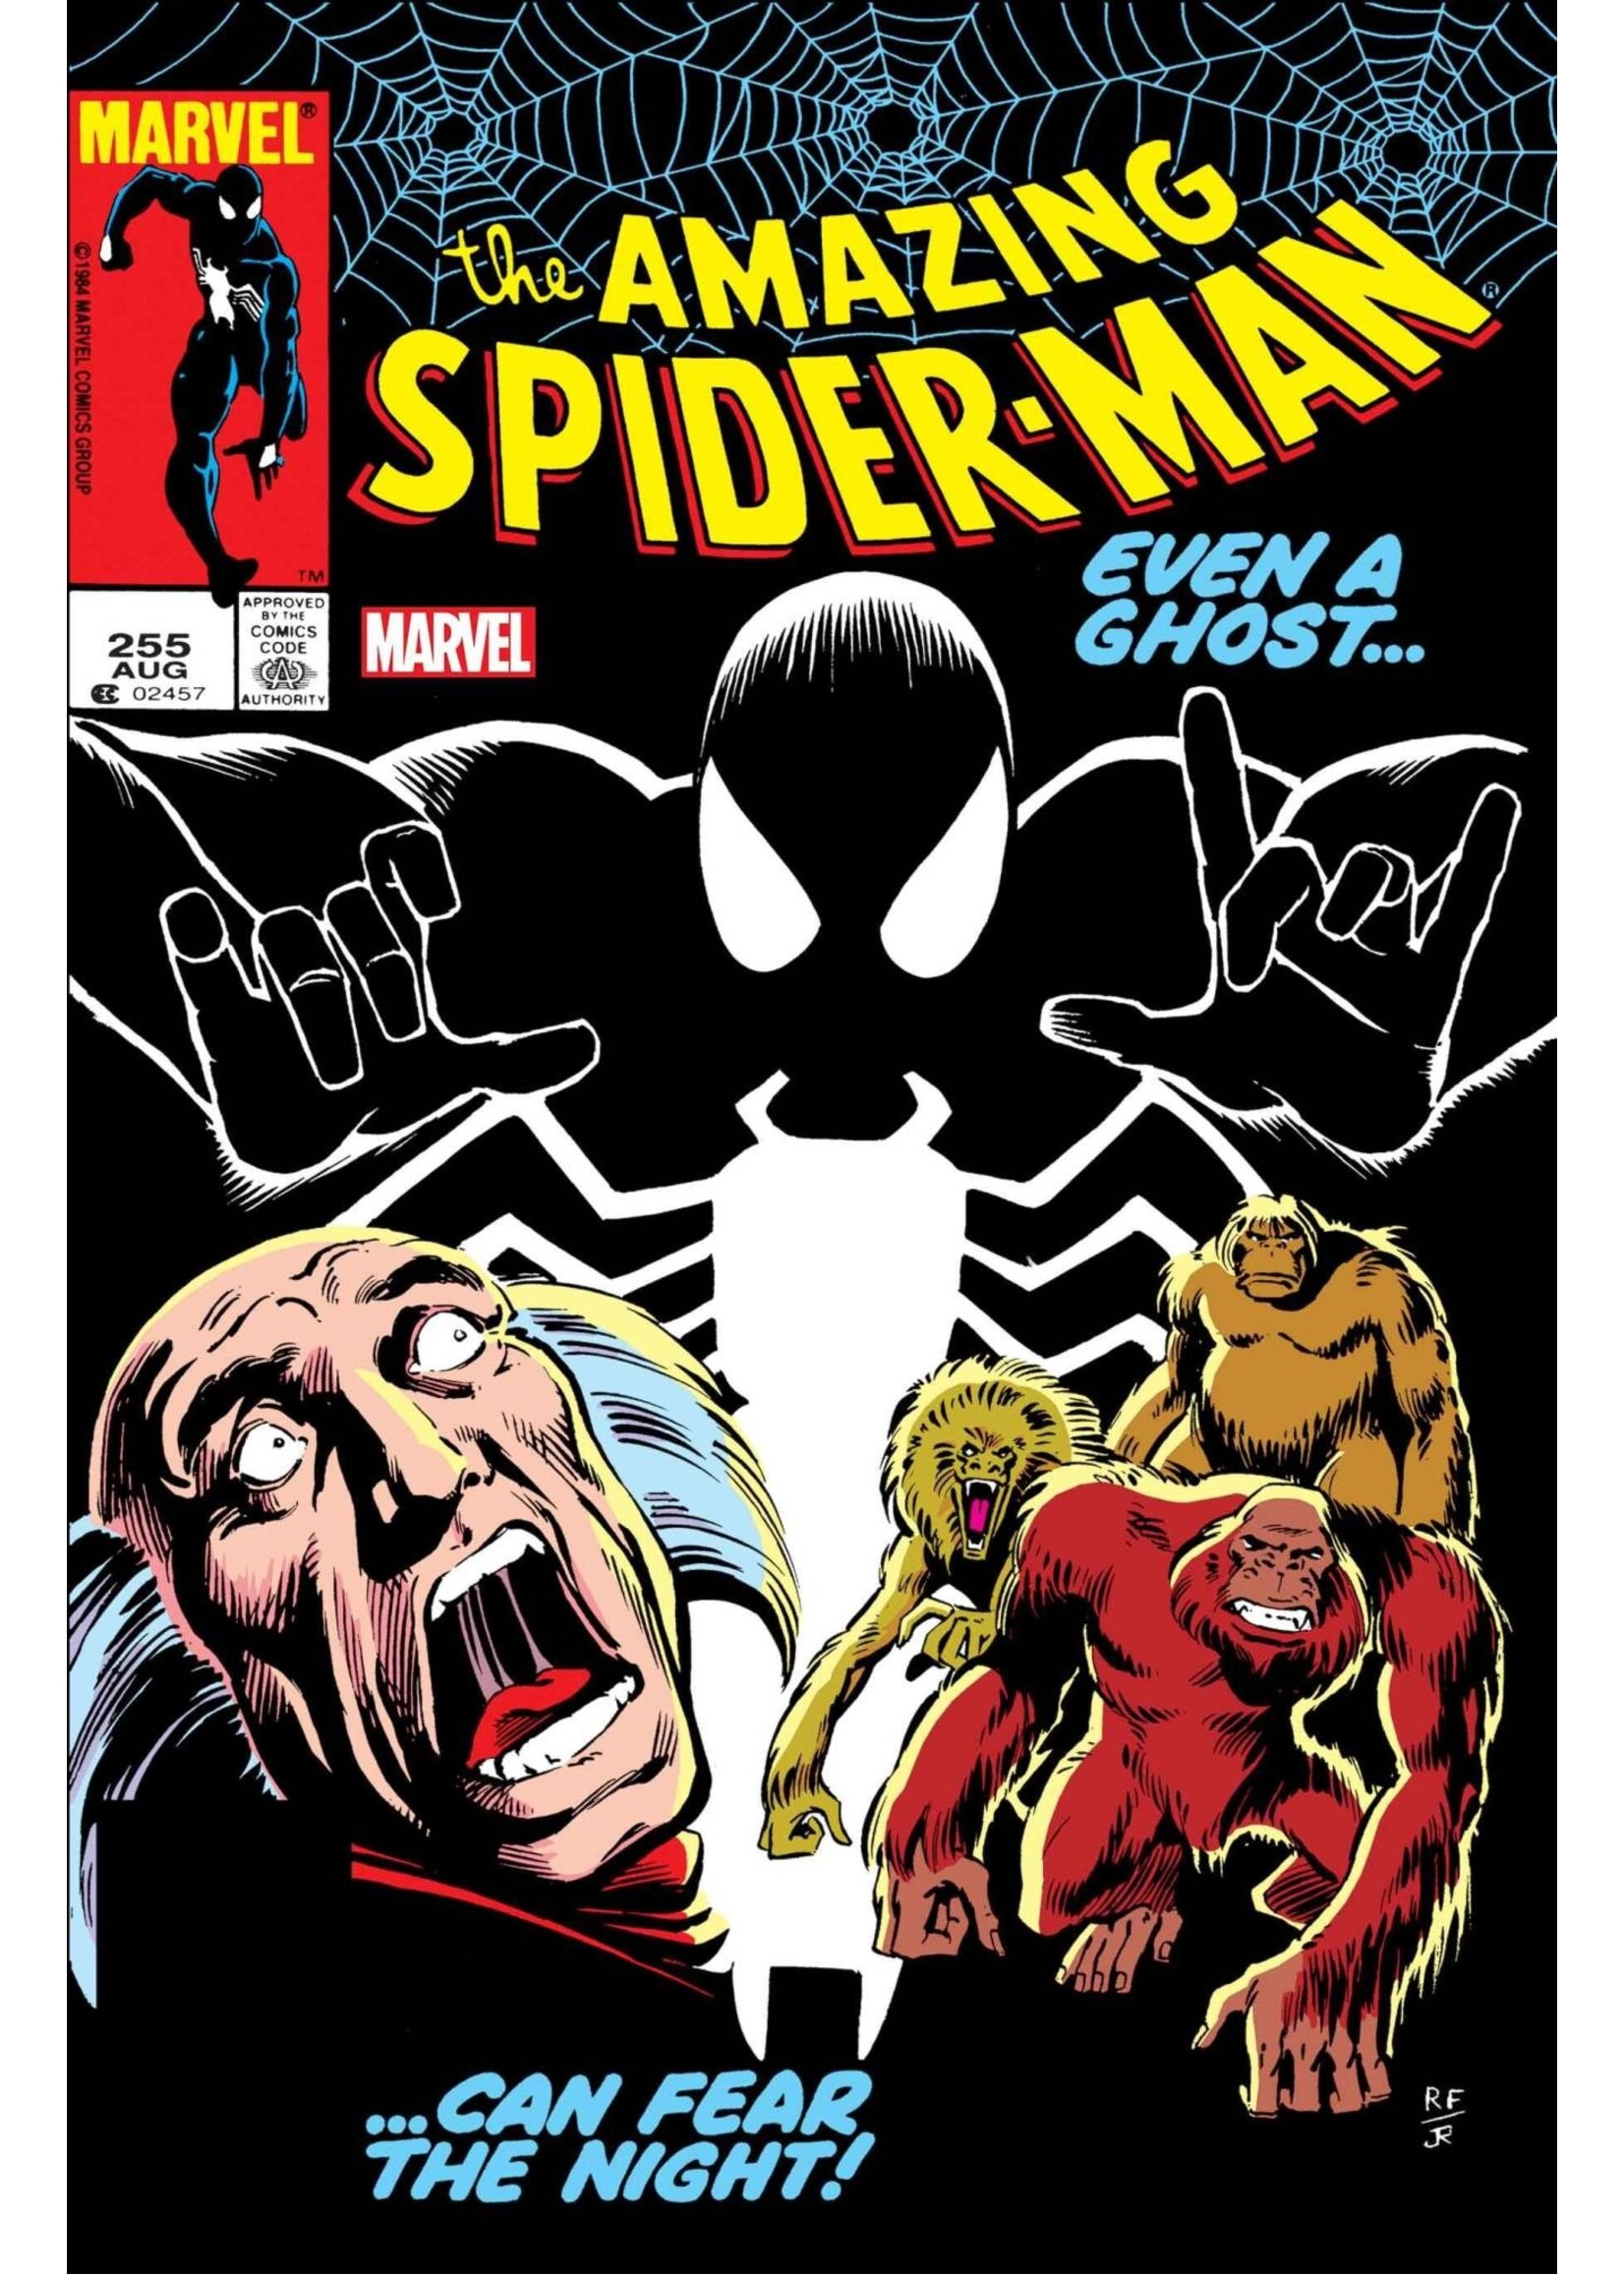 MARVEL COMICS AMAZING SPIDER-MAN #255 FACSIMILE EDITION